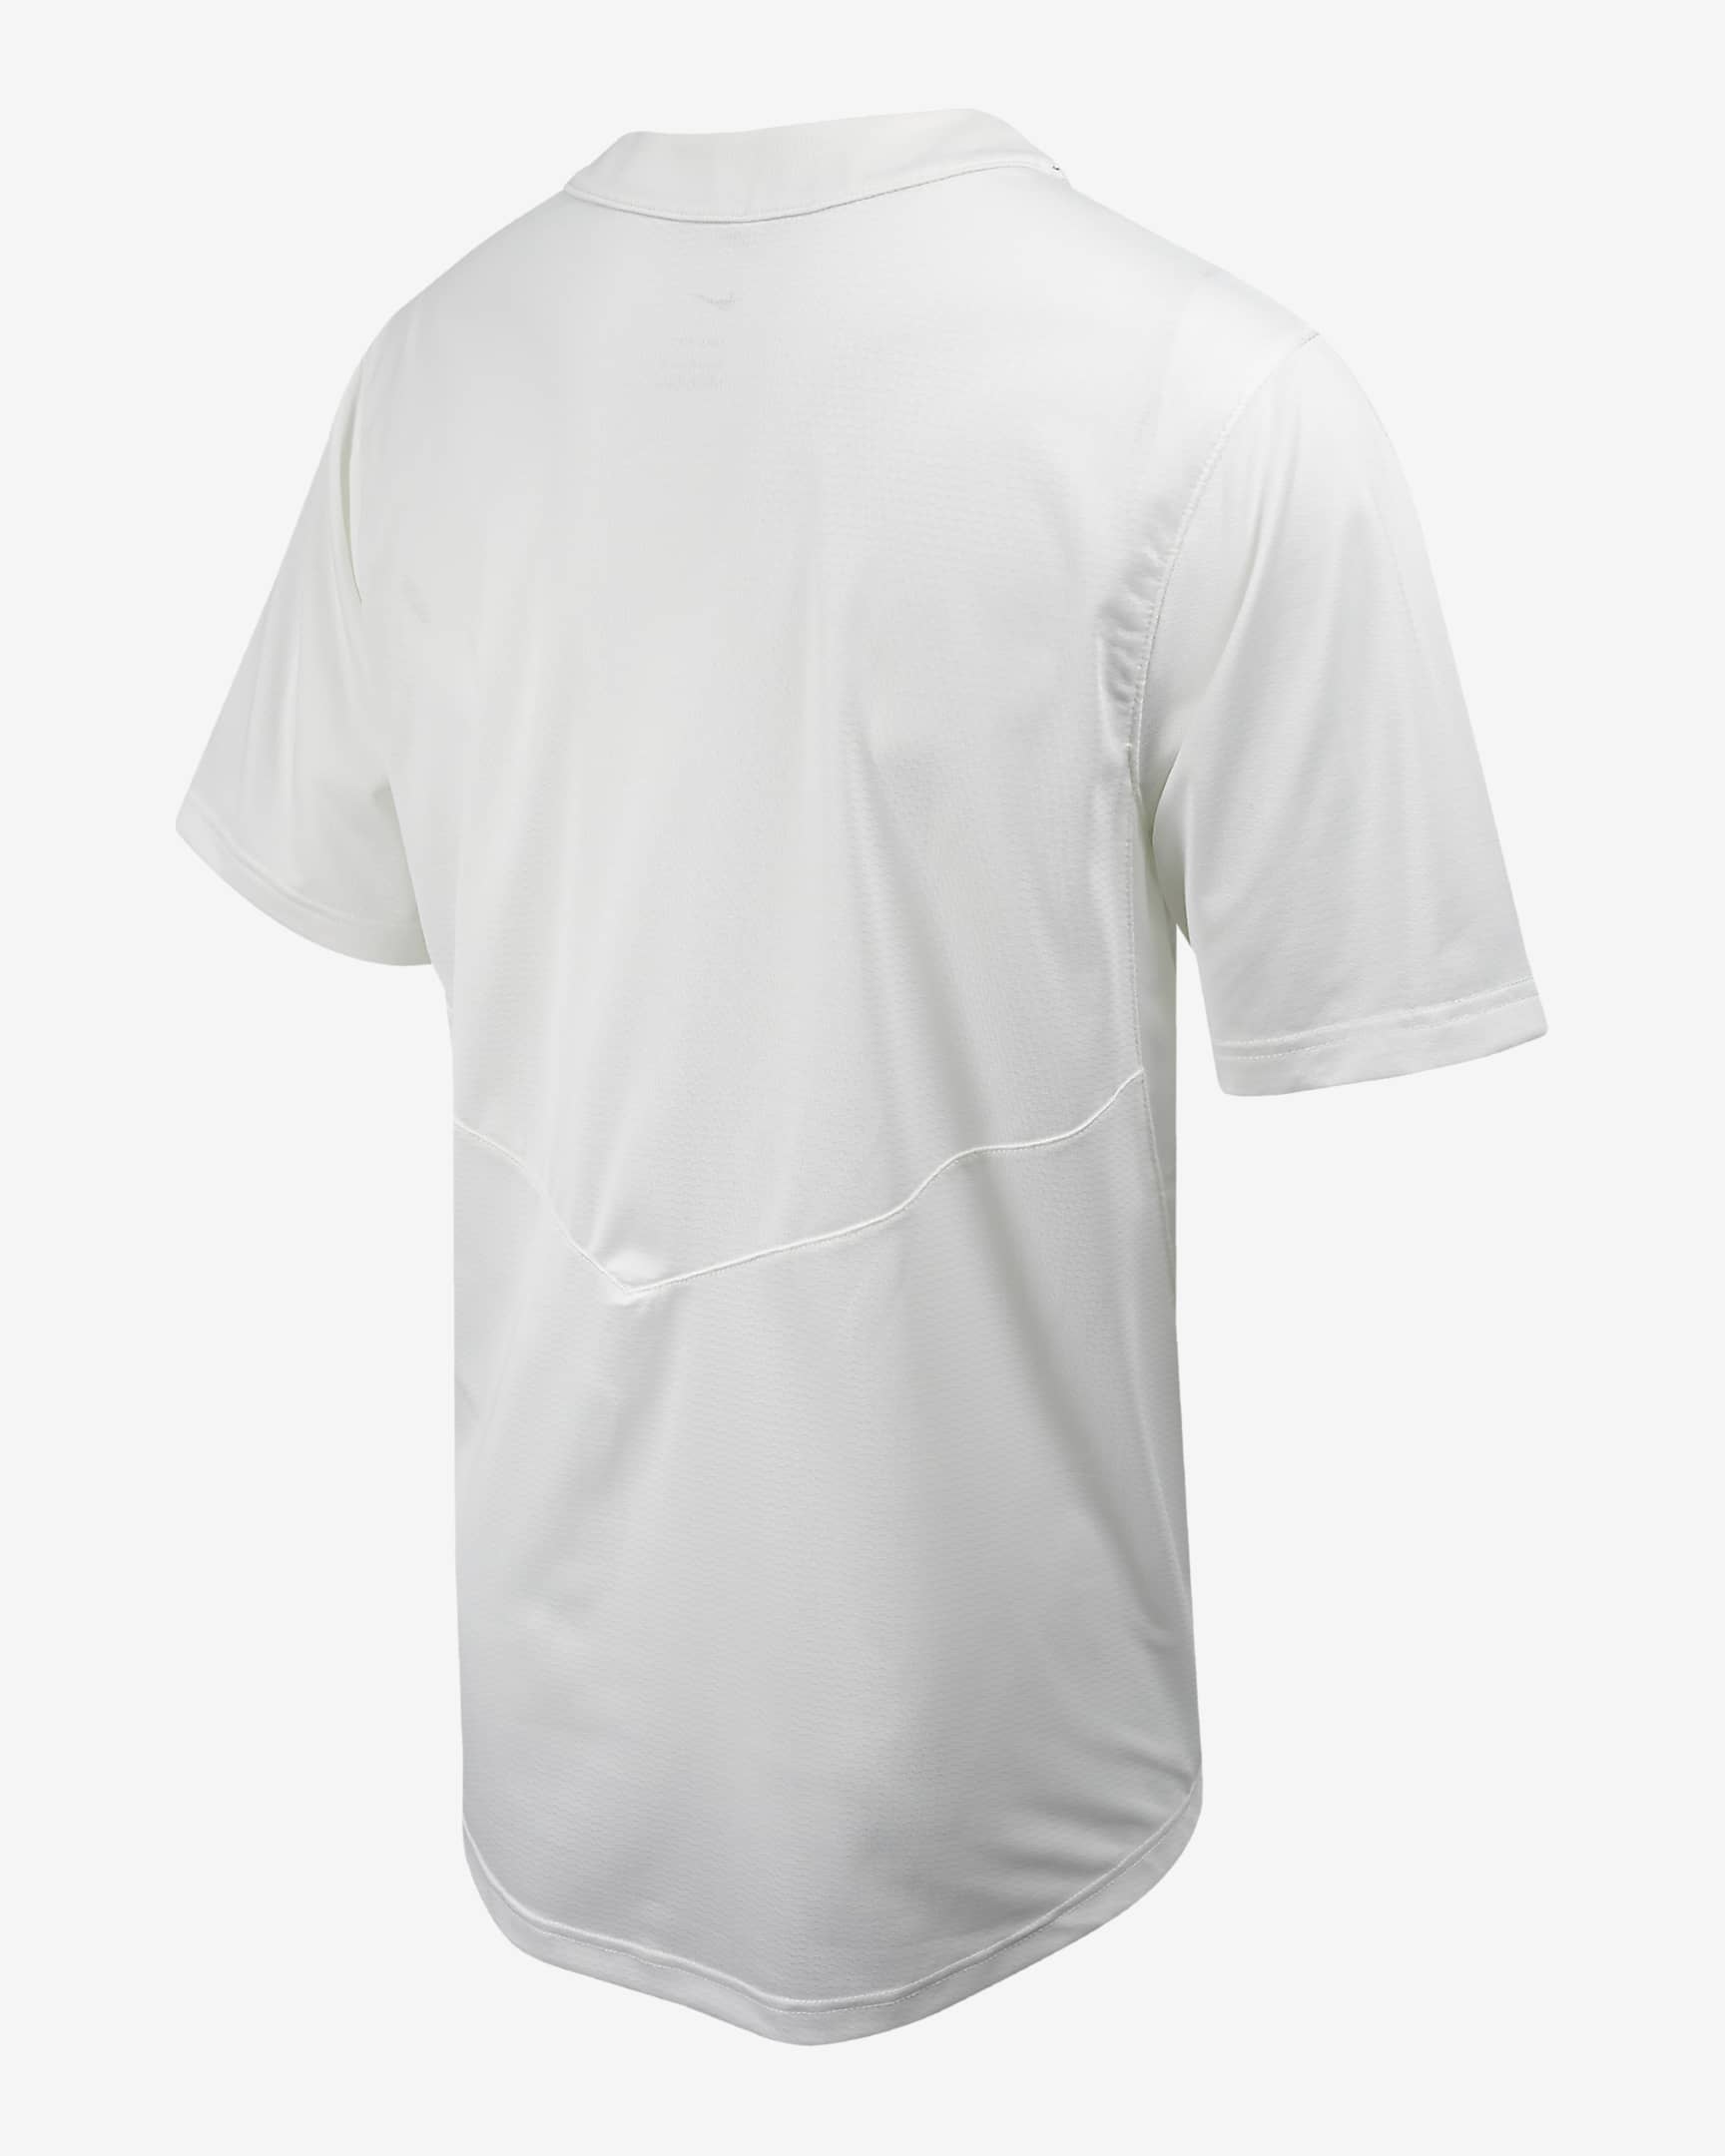 Full Button Baseball Shirt Printable